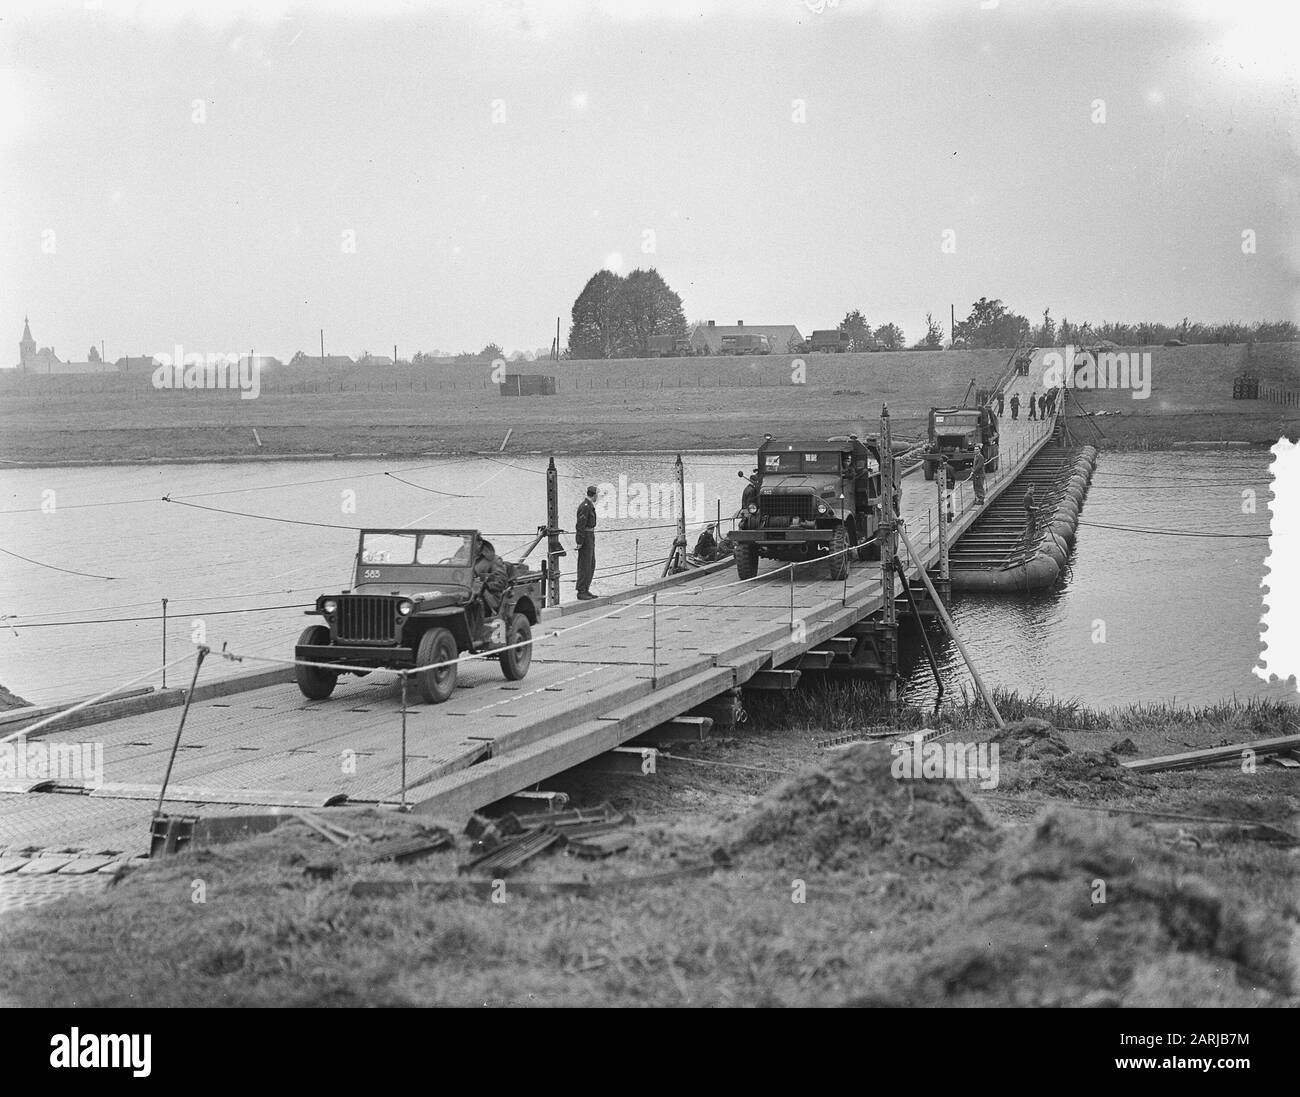 Wijchen. Costruzione di ponti militari sul braccio del Maas Data: 14 ottobre 1953 Località: Gelderland, Wijchen Parole Chiave: Edilizia, ponti Nome personale: Maas Foto Stock